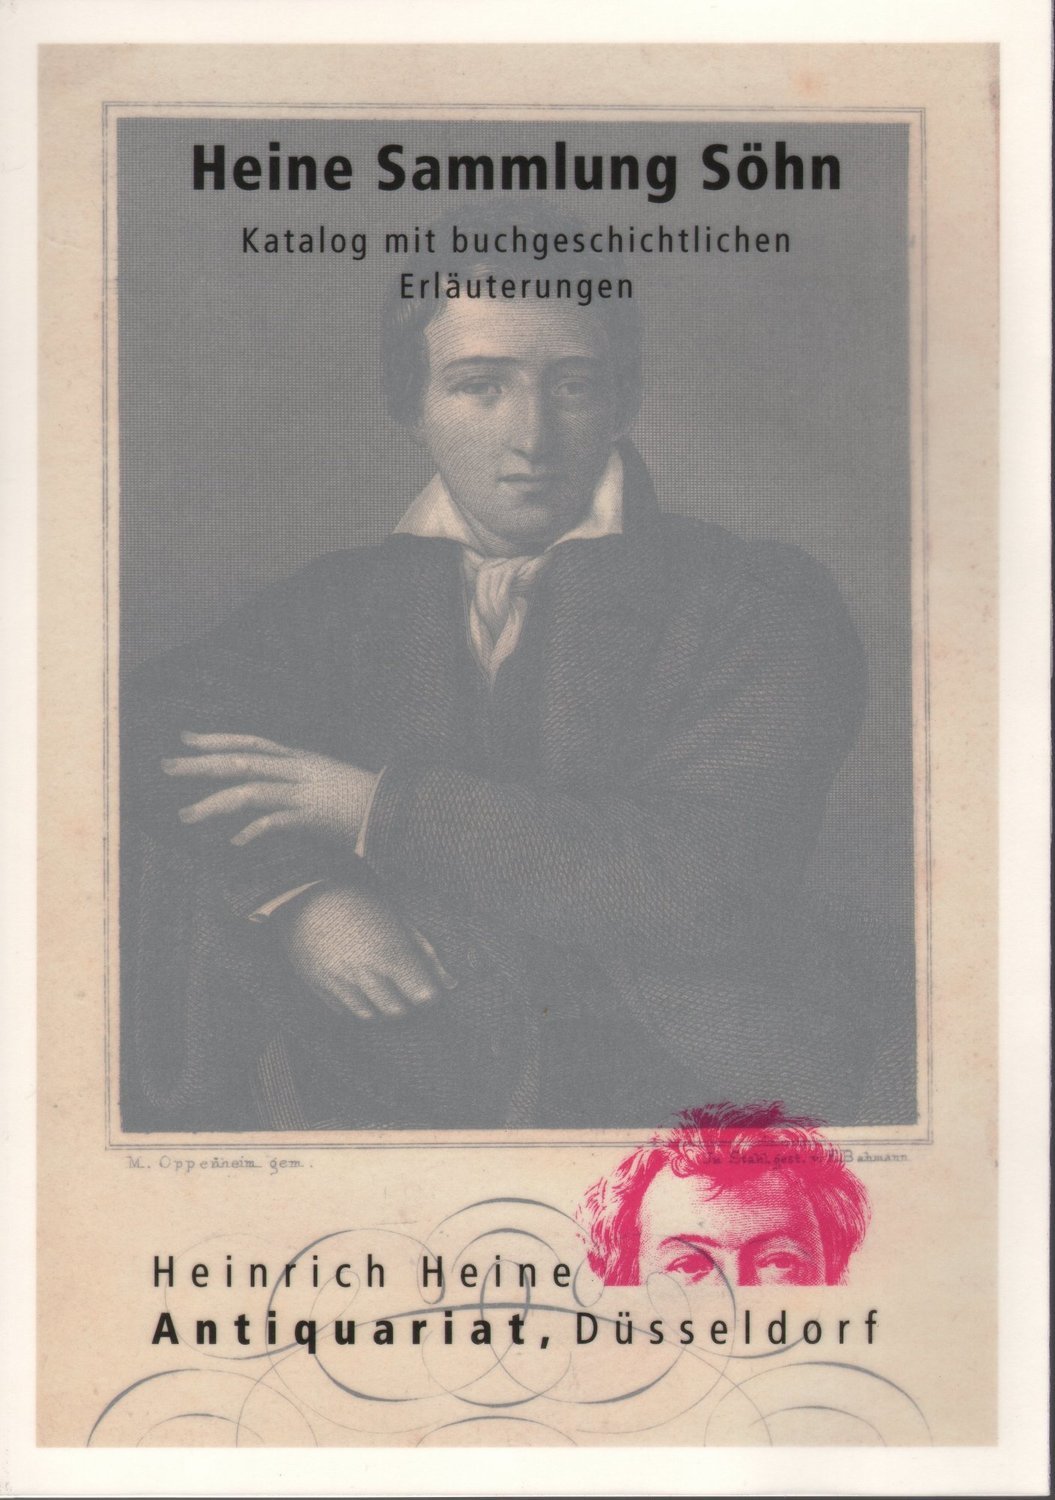 Katalog der Heinrich Heine Sammlung Söhn (HSS).